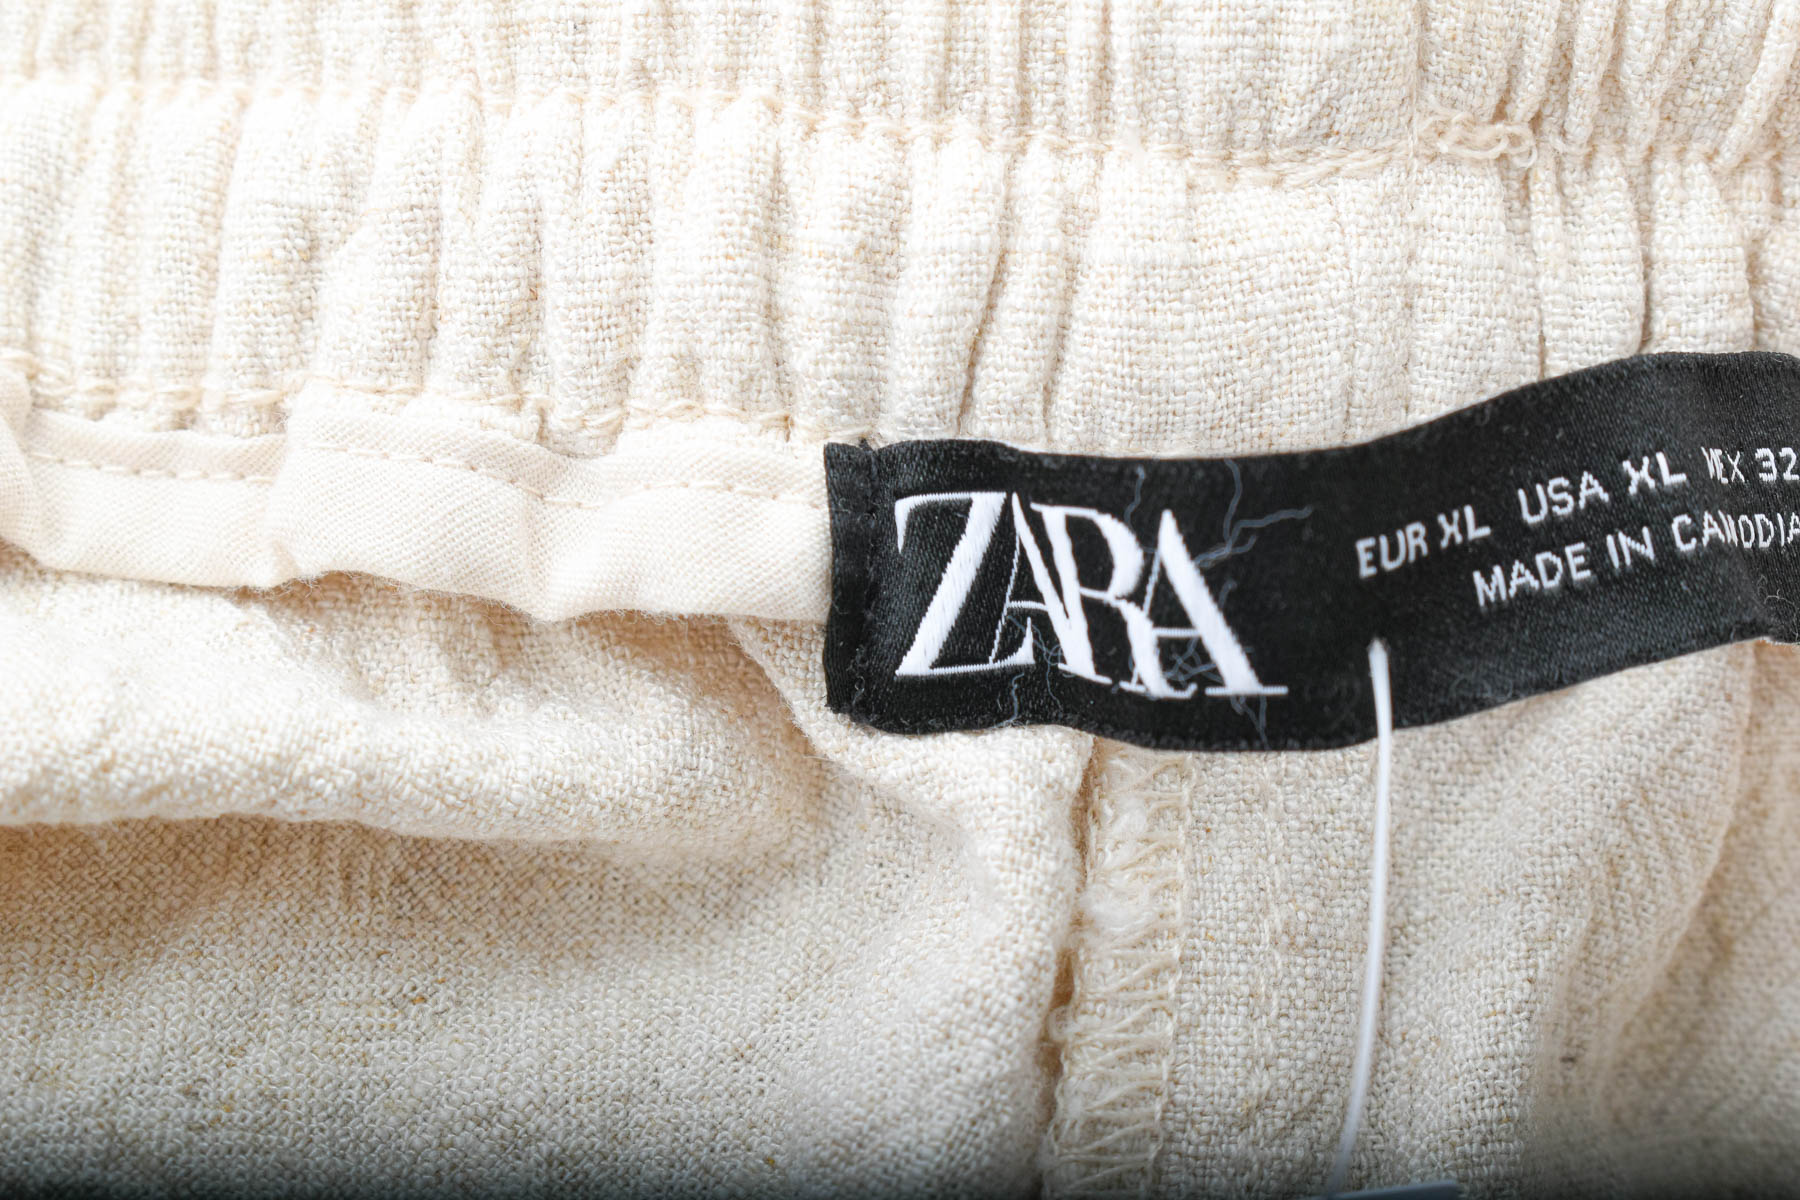 Women's trousers - ZARA - 2